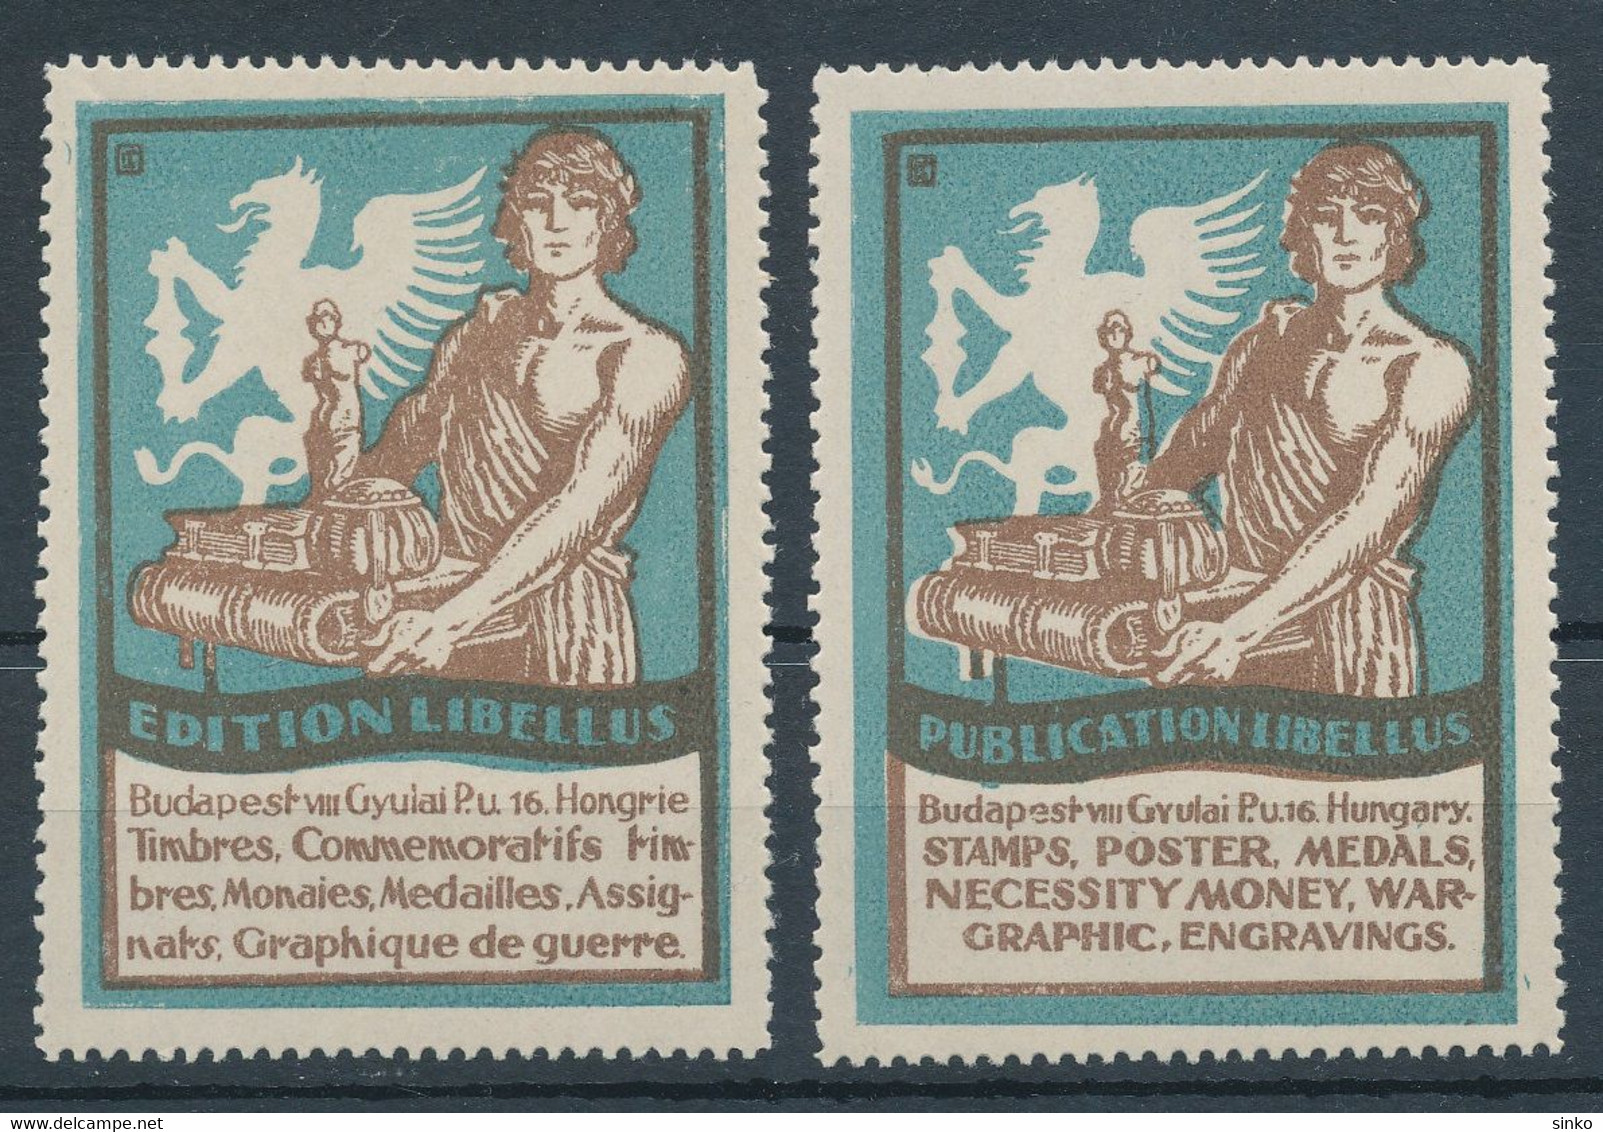 1929. Publication Libellus Advertisement Cinderella - Hojas Conmemorativas